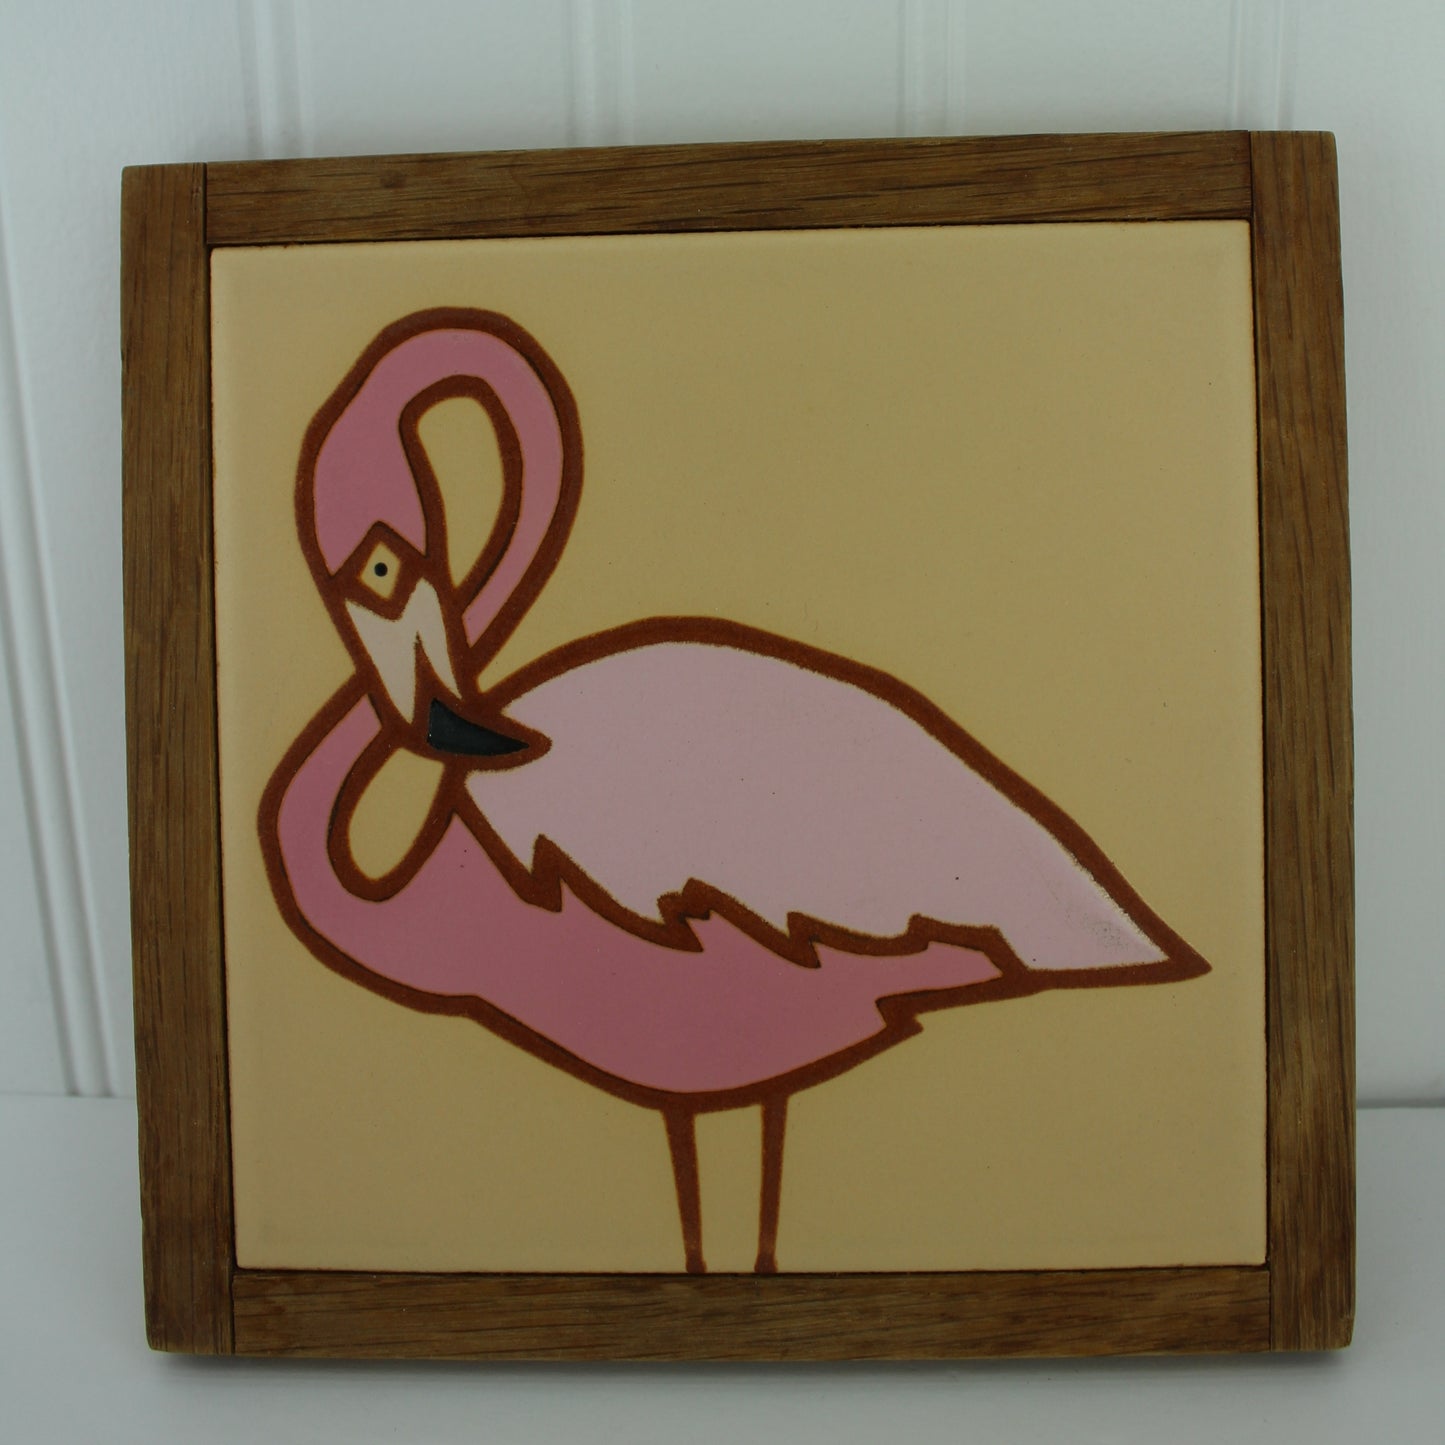 Glazin' Images Jane & Barb Tile Trivet - Flamingo series Wood Frame